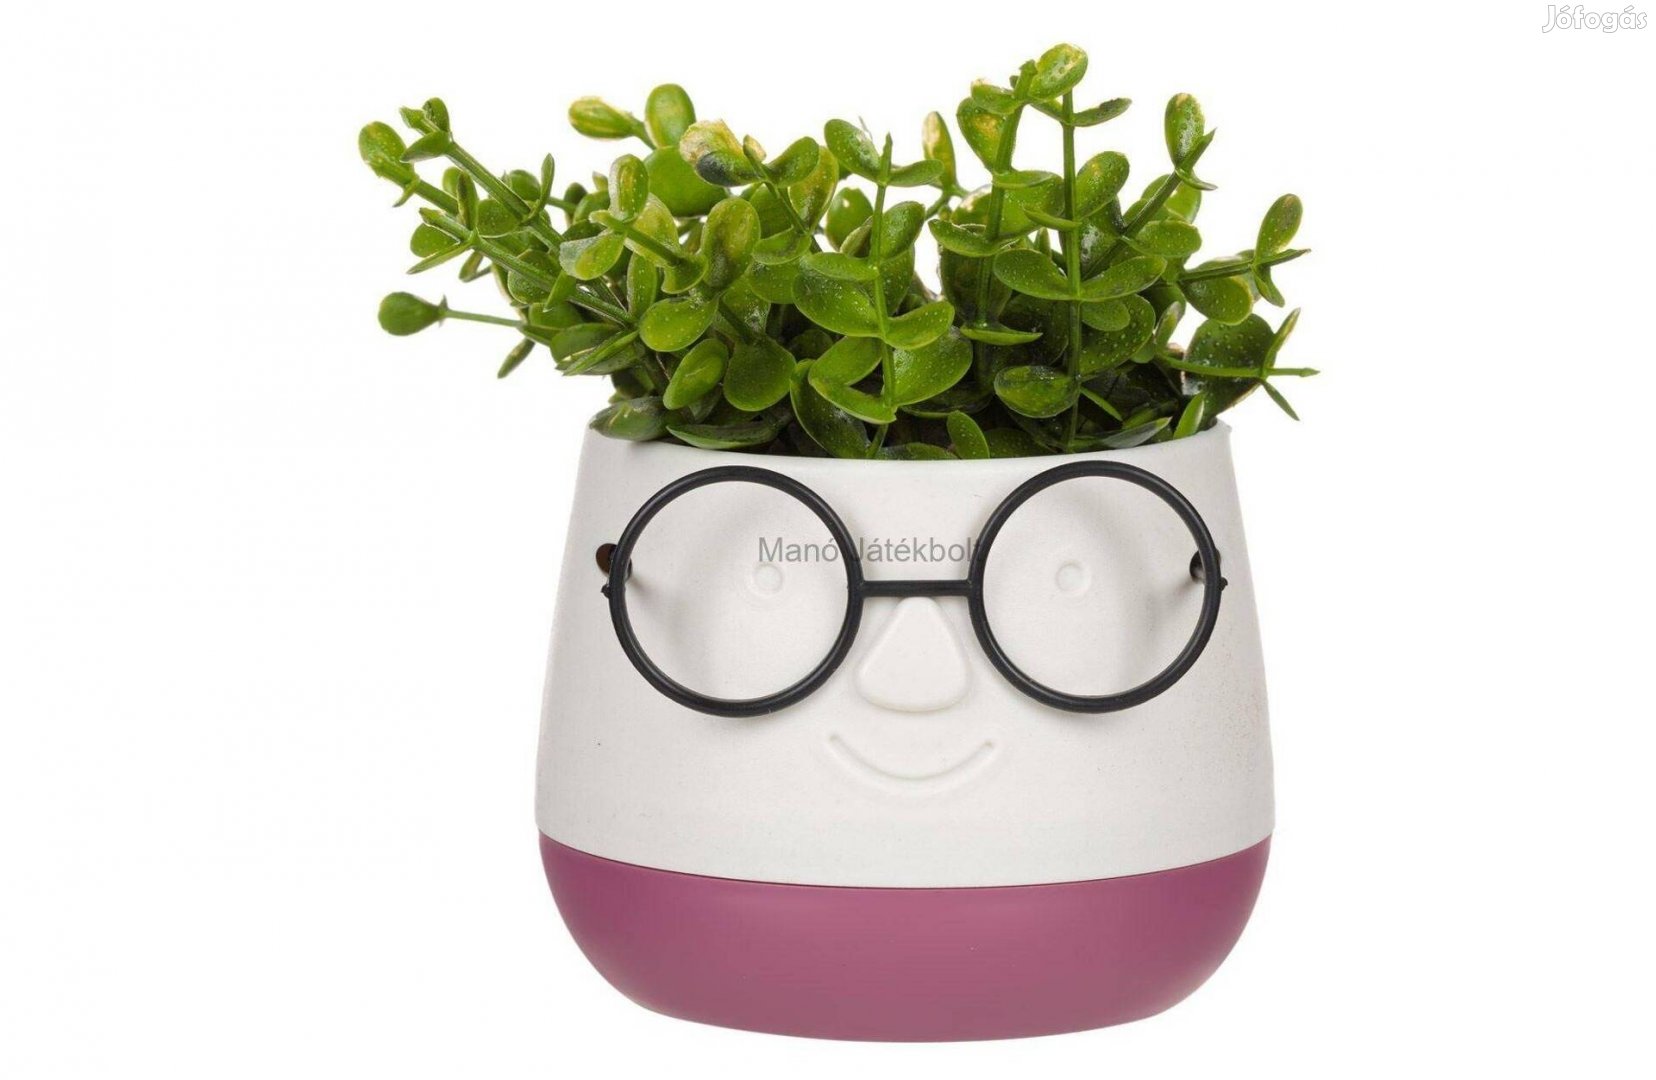 Művirág lila kaspóban vicces szemüveggel 9,5x9,5x14 cm